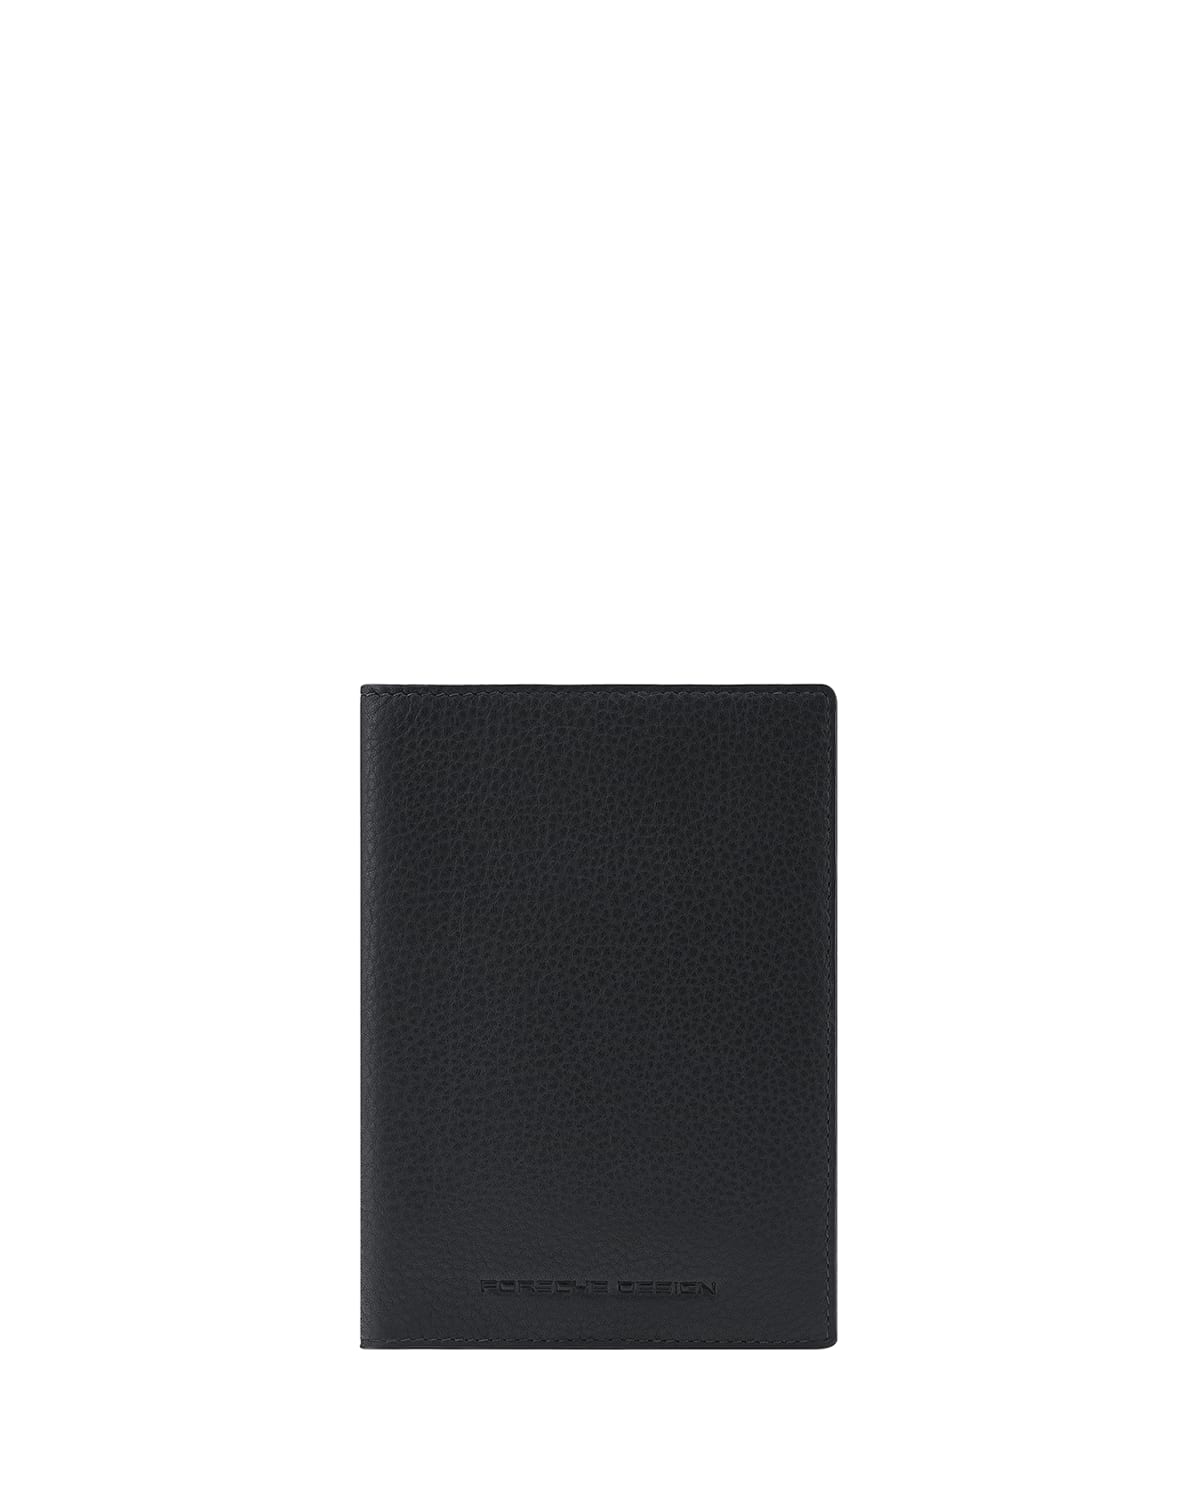 Porsche Design Classic Leather Passport Holder In Black